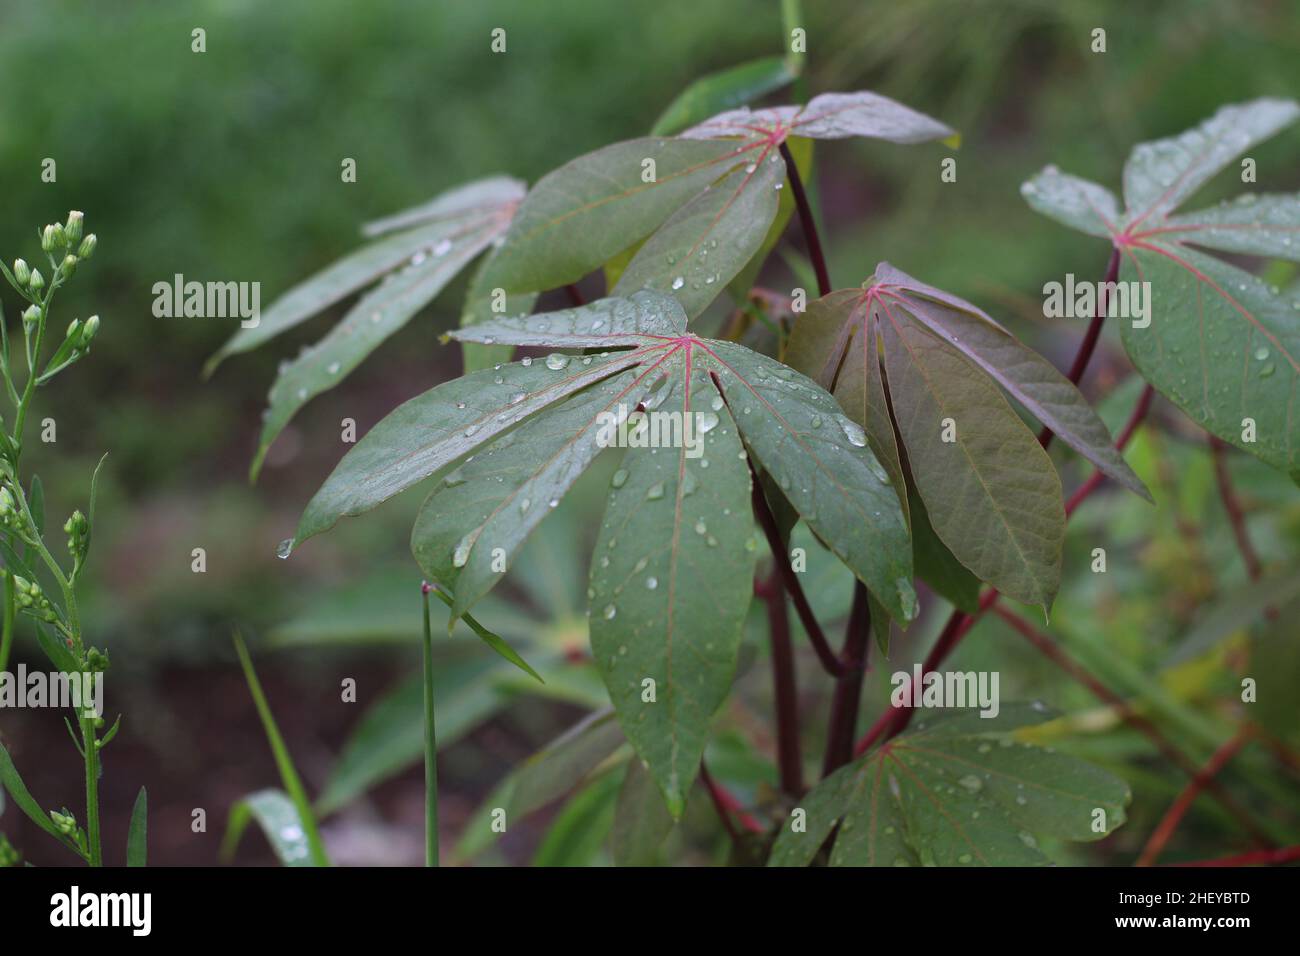 Nahaufnahme von Cassava-Blättern, die durch Tau im Garten nass sind Stockfoto